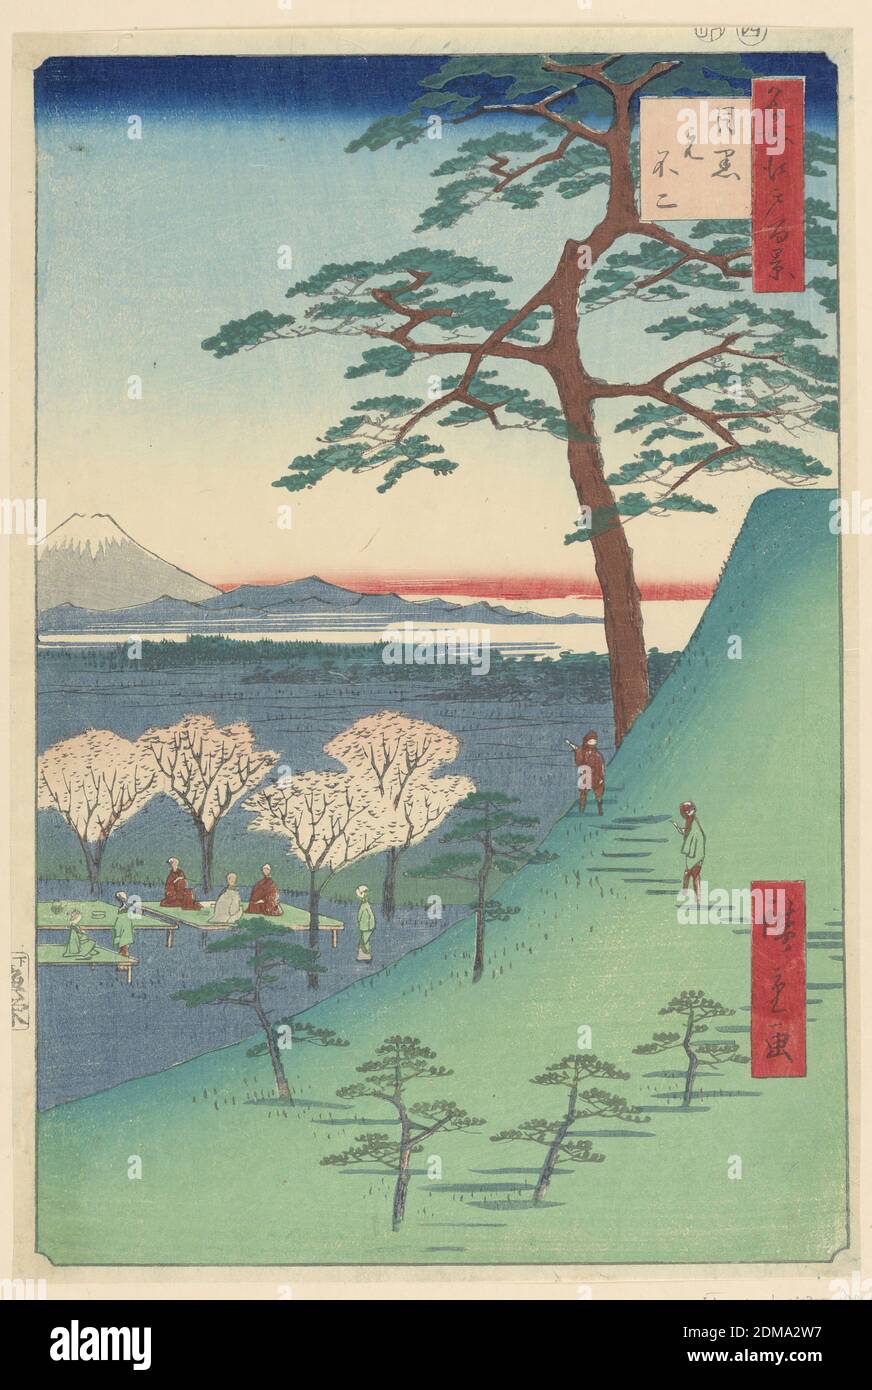 Viewing of Cherry Blossoms, Ando Hiroshige, Japanese, 1797–1858, Holzschnitt in farbiger Tinte auf Papier, Diese Szene zeigt Menschen, die unter den blühenden Kirschbäumen sitzen, das Leben betrachten und die Wunder der Natur genießen. Zwei Leute machten einen Spaziergang und bekommen einen besseren Blick auf den Fuji aus einer höheren Höhe. Dies ist eine typische Landschaftsansicht von Hiroshige, der hervorragend darin ist, schöne Landschaften Japans zu rekonstruieren., Japan, 1797-1858, Landschaften, Drucken Stockfoto